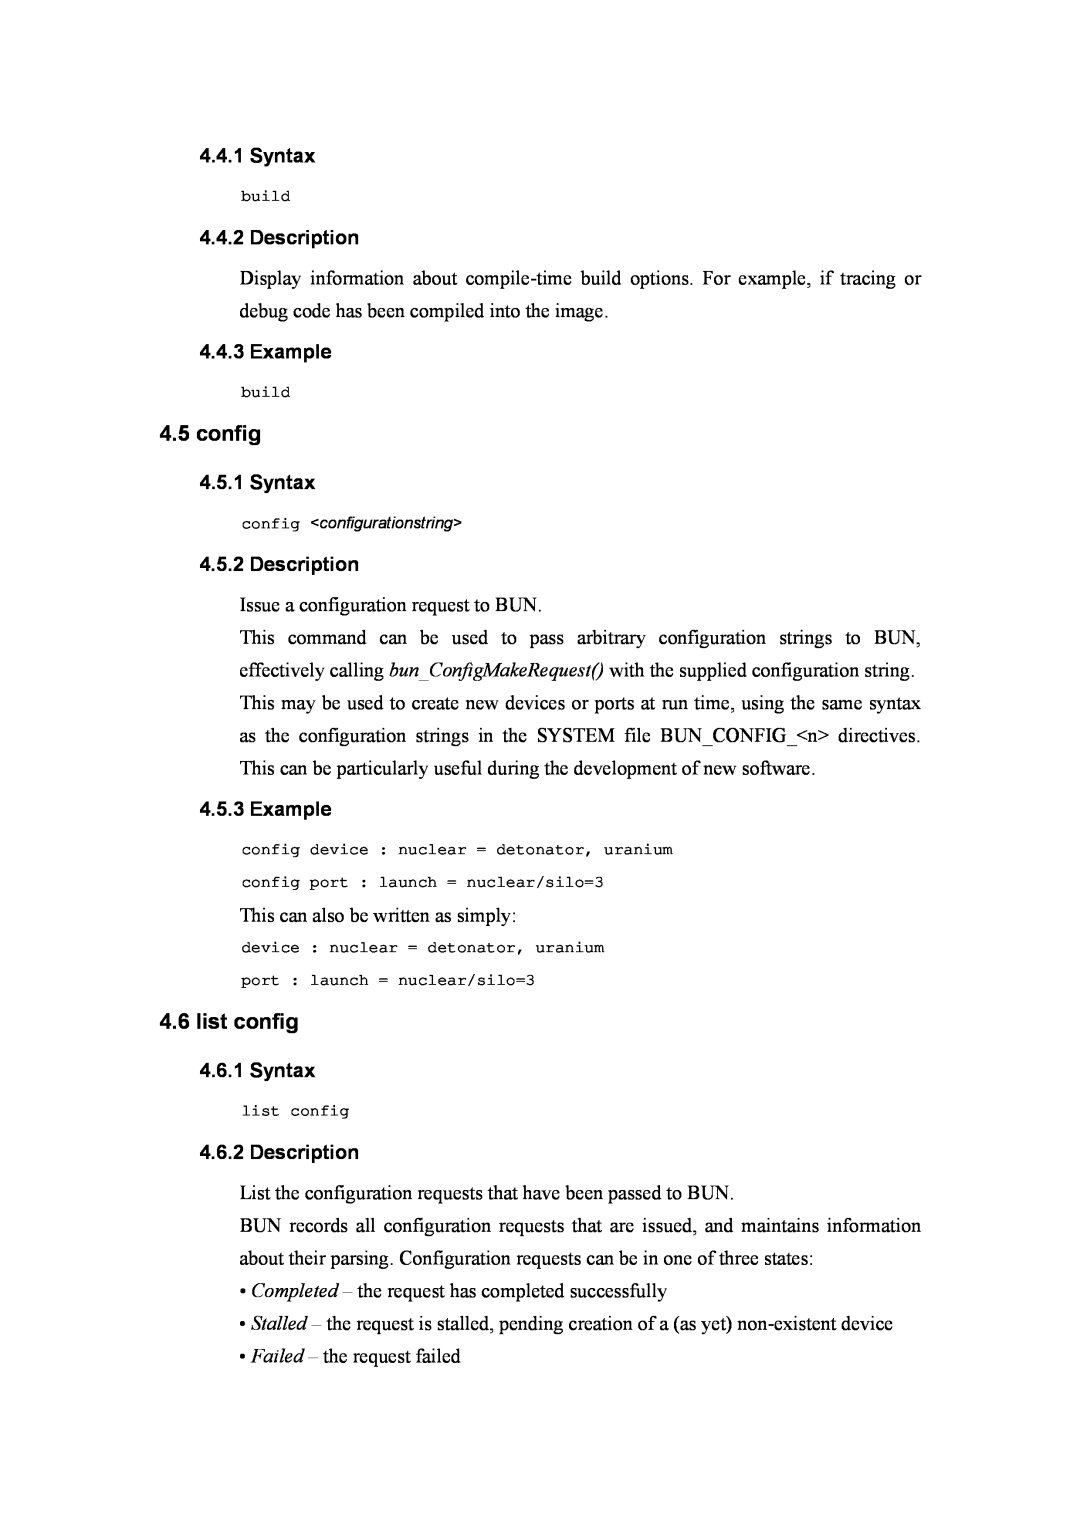 Atlantis Land A02-RA(Atmos)_ME01 manual list config, Syntax, Description, Example 